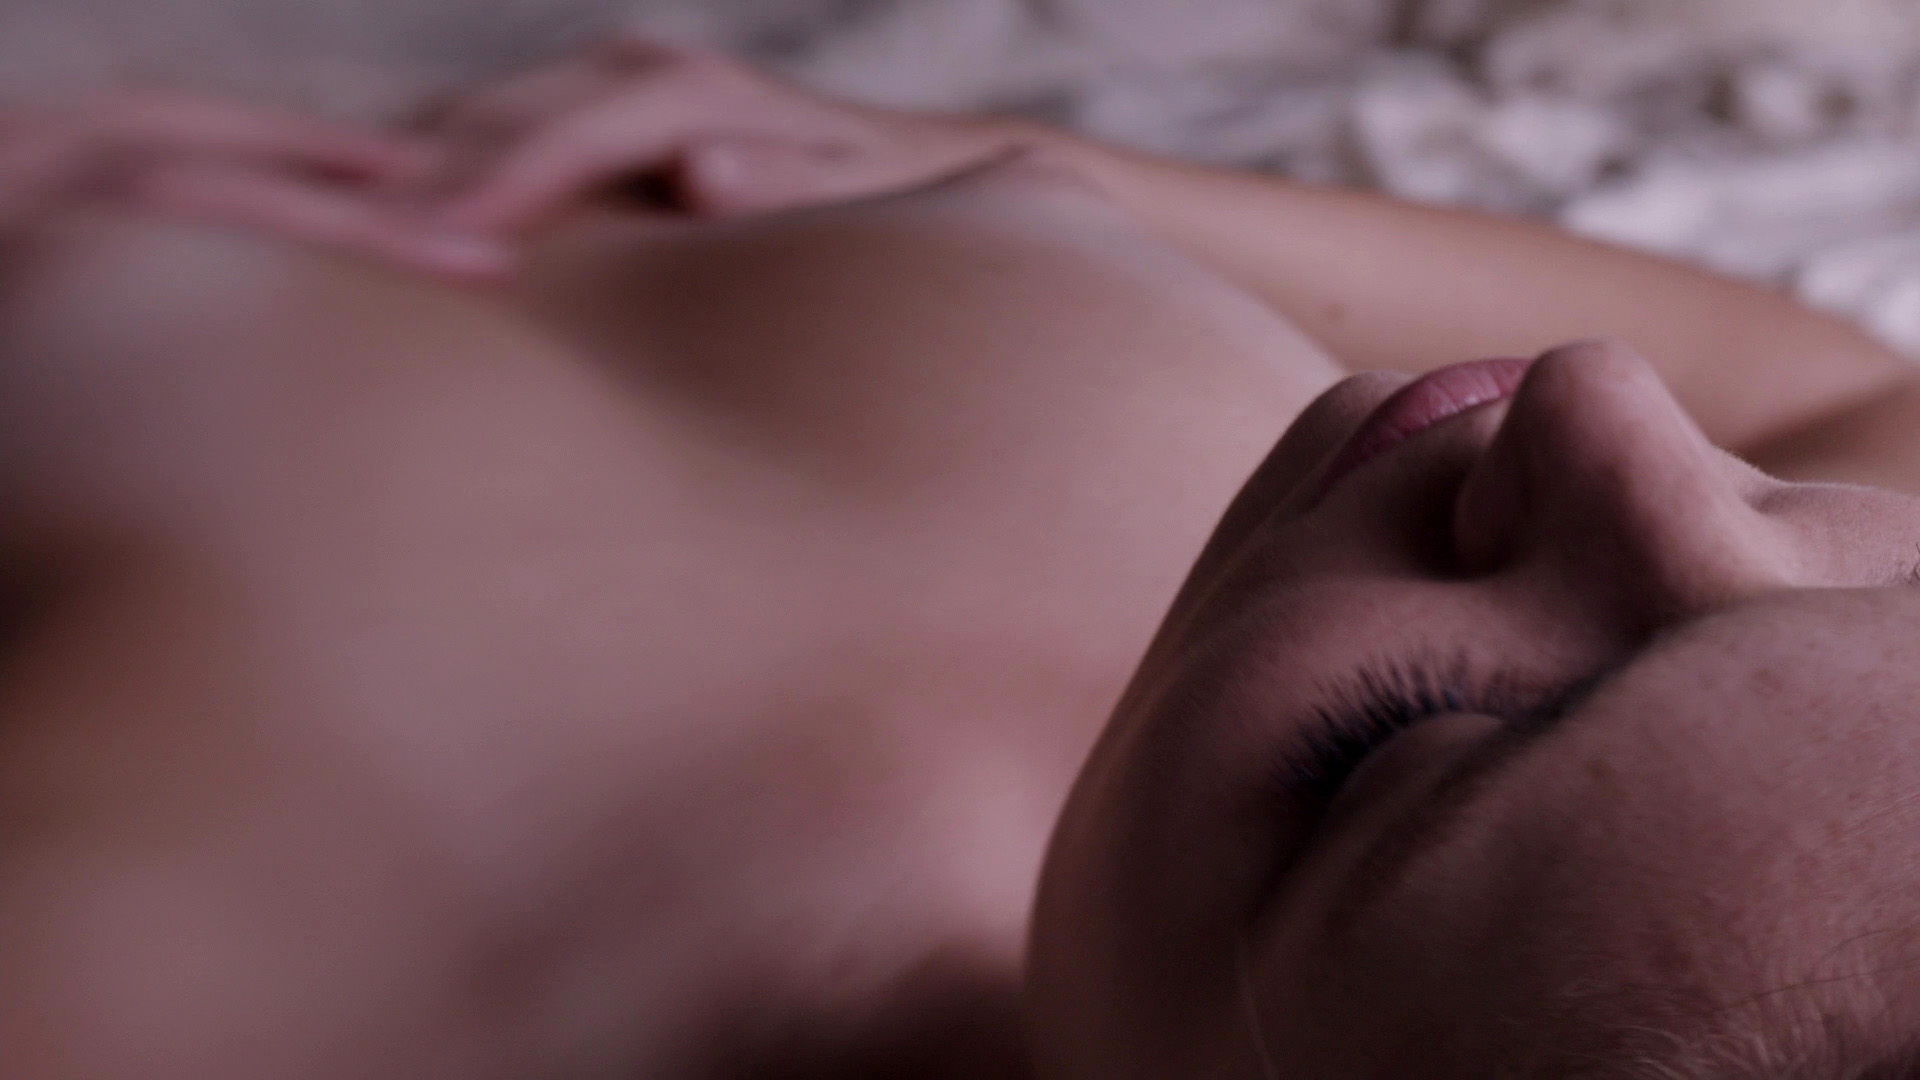 Лили Симмонс в сериале "Банши" (голая грудь и попа) .